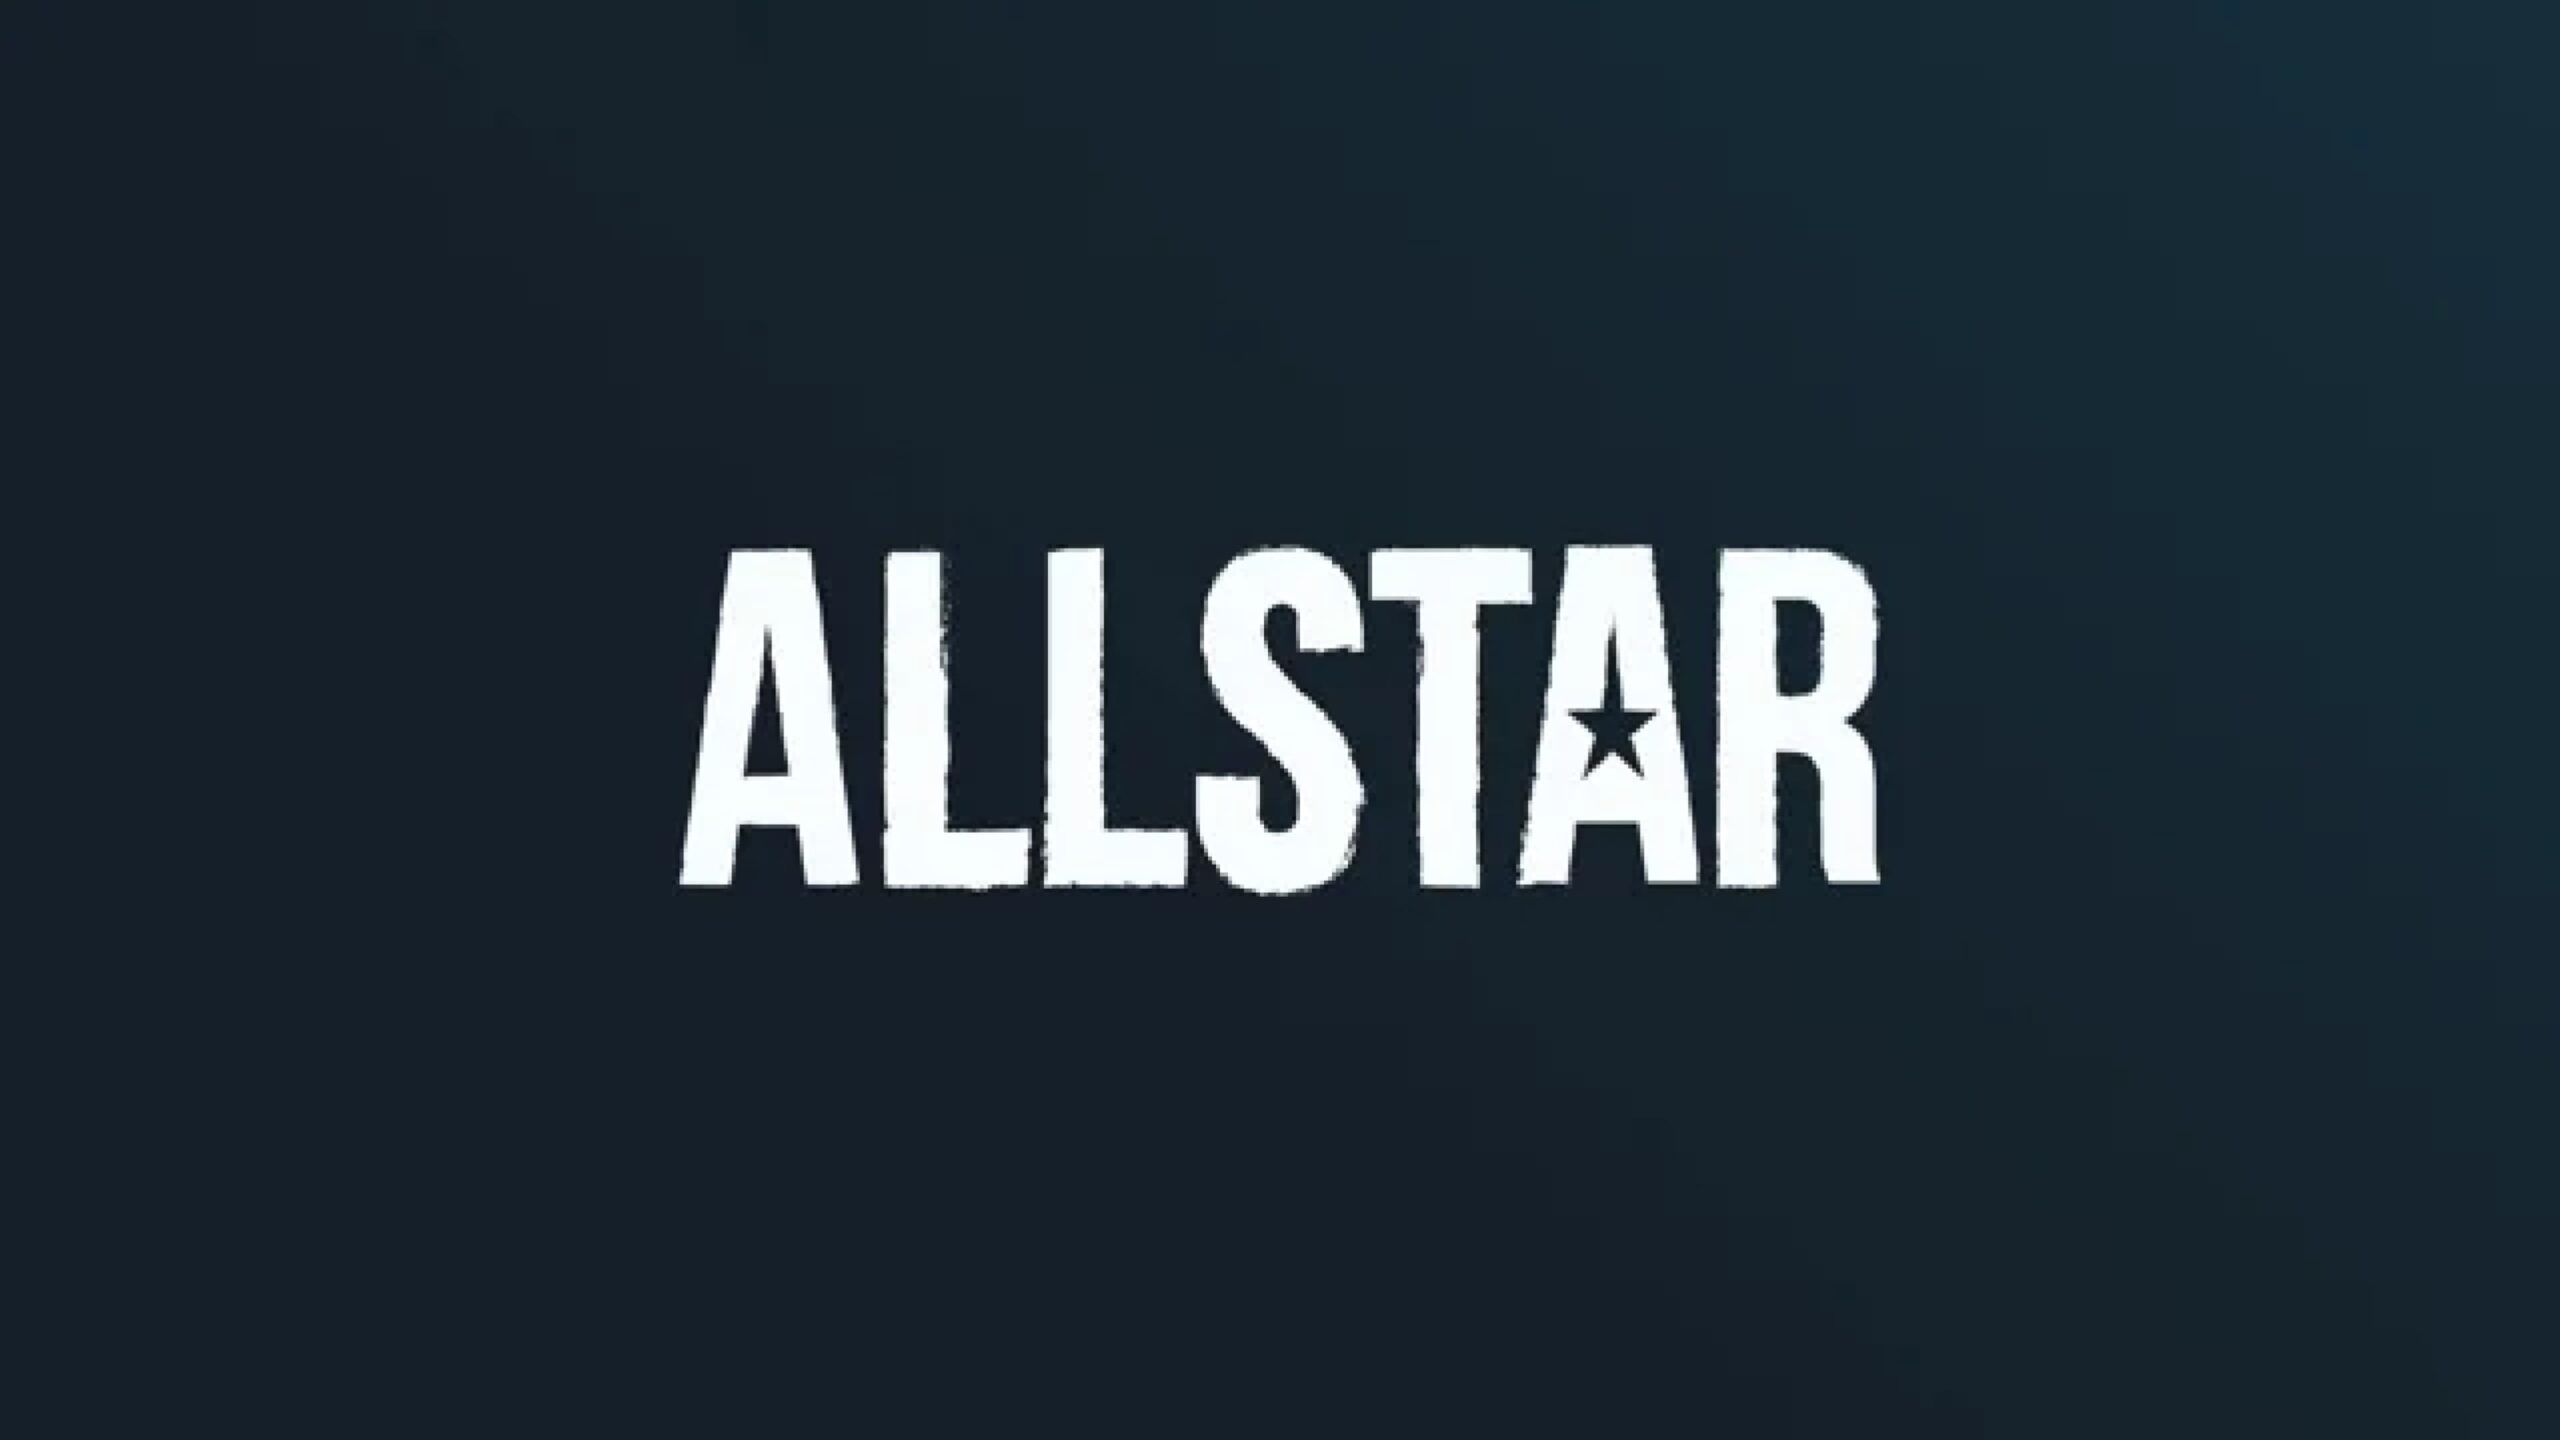 Allstarが1,200万ドルを調達し、ゲームコンテンツ作成プラットフォームを拡大